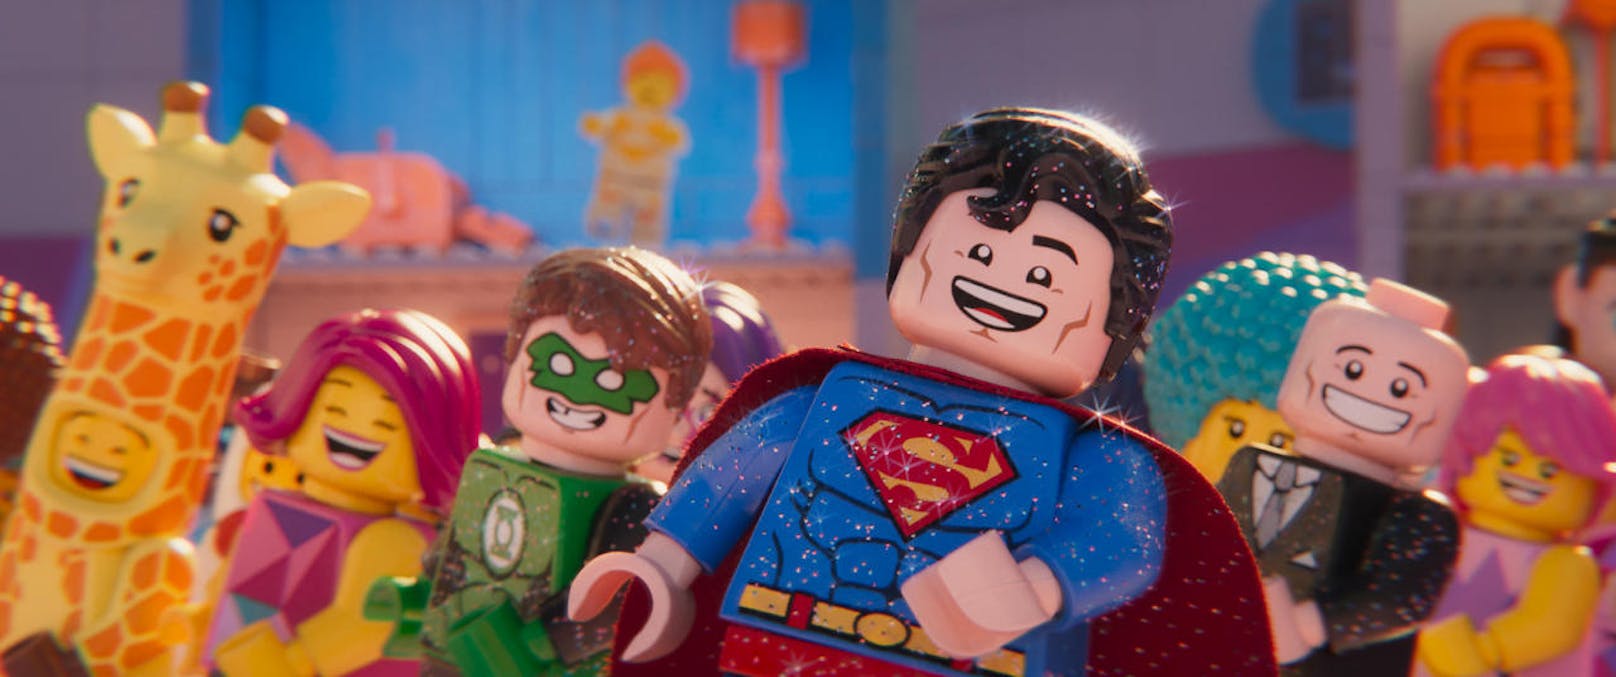 Glitzernd und dauerfröhlich sind Superman, rechts neben ihm sein Ex-Erzfeind Lex Luther und Green Lantern von der neuen Welt voll assimiliert